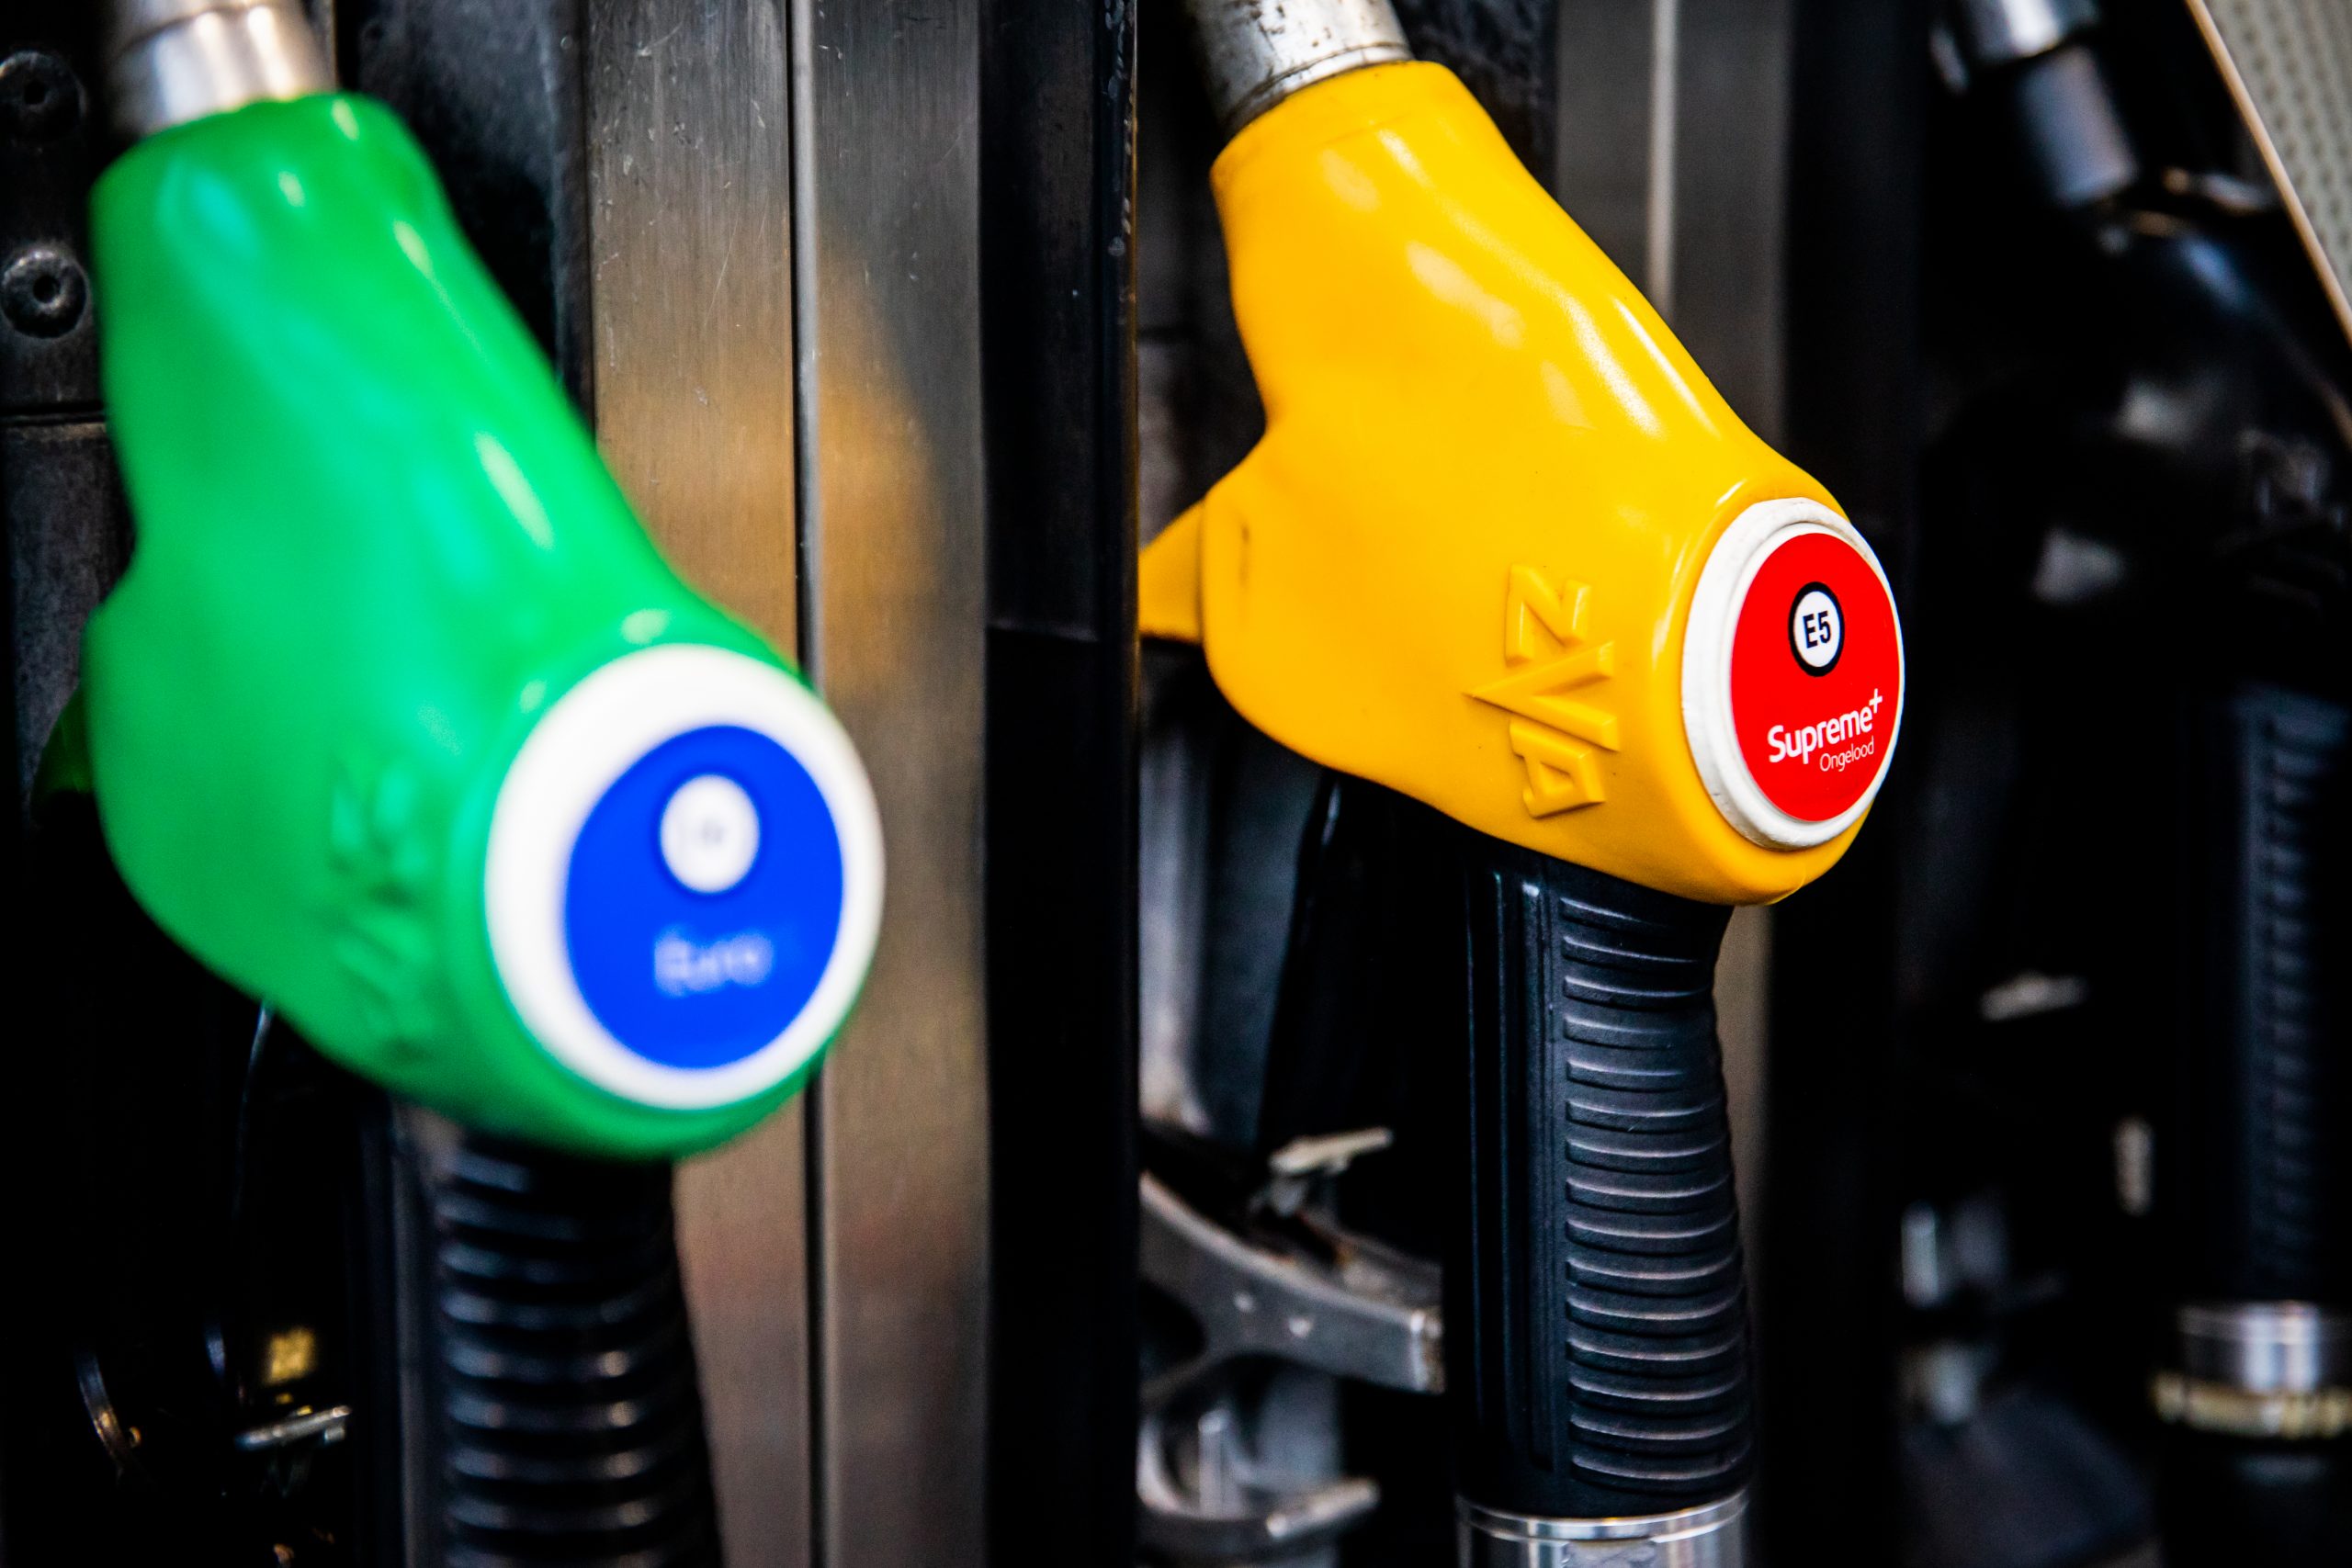 benzine prijs hoger inflatie sparen